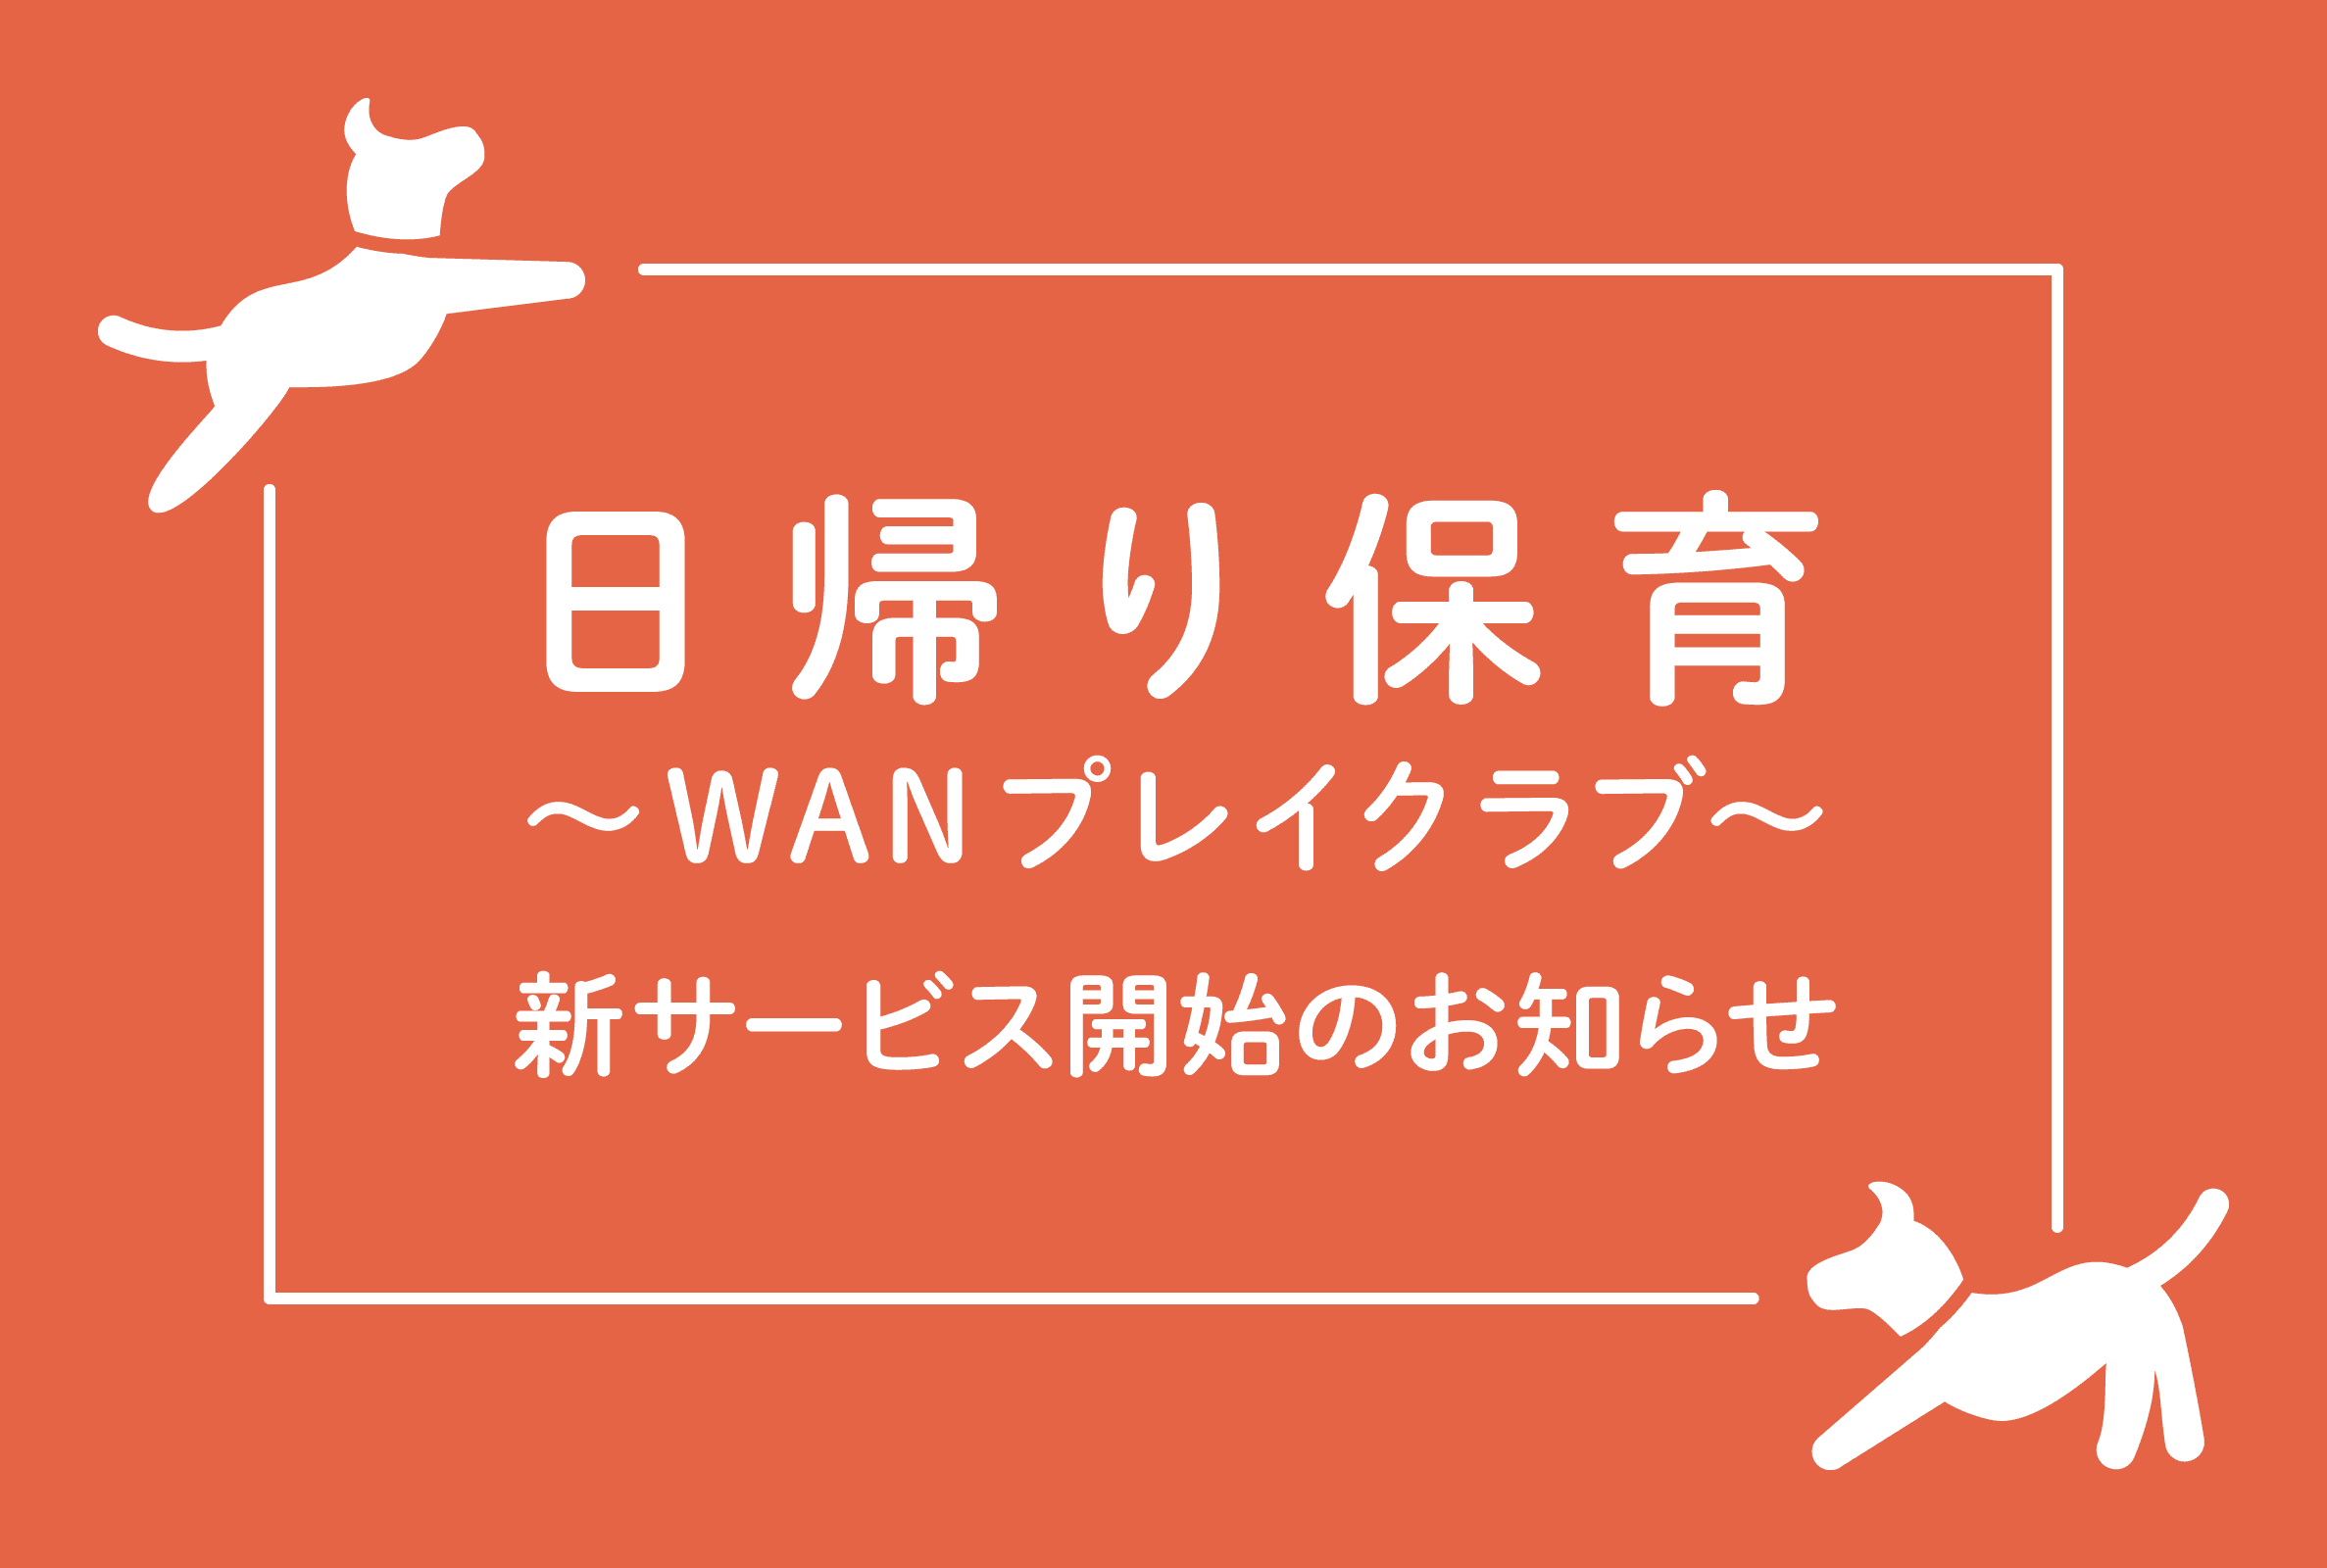 新サービス【日帰り保育 ～WANプレイクラブ～】を10月1日よりスタートします！